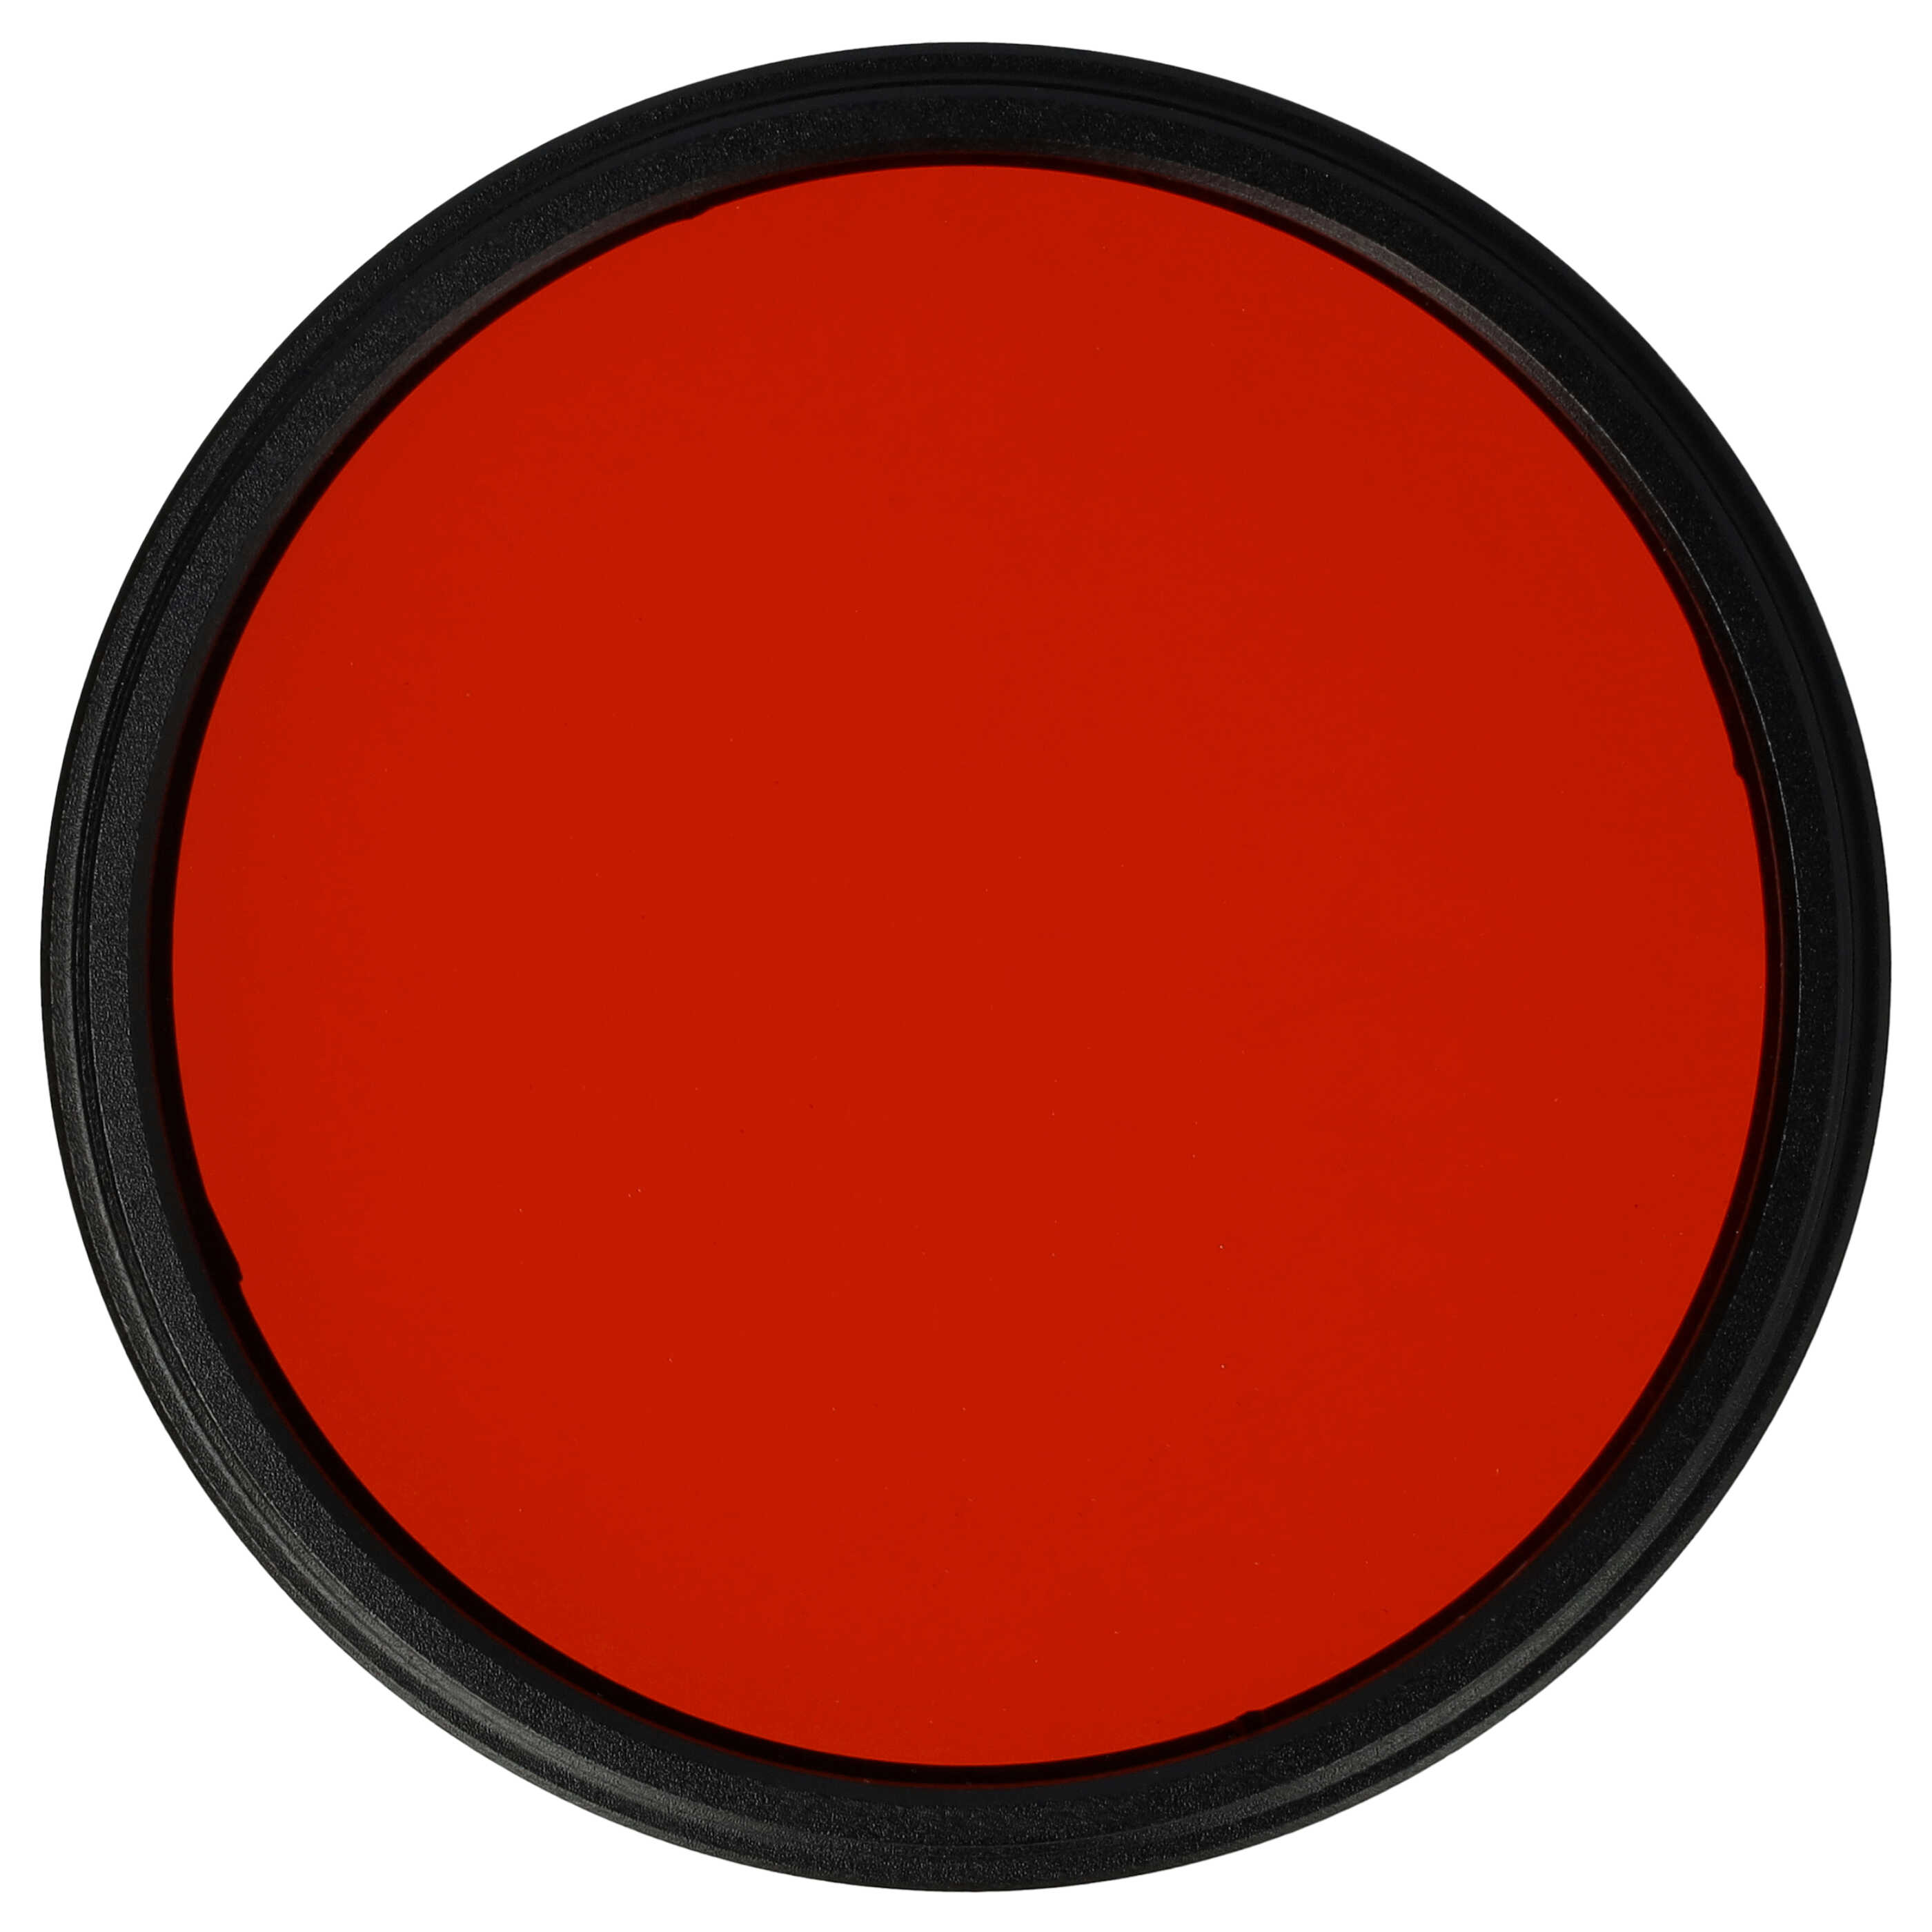 Farbfilter orange passend für Kamera Objektive mit 58 mm Filtergewinde - Orangefilter